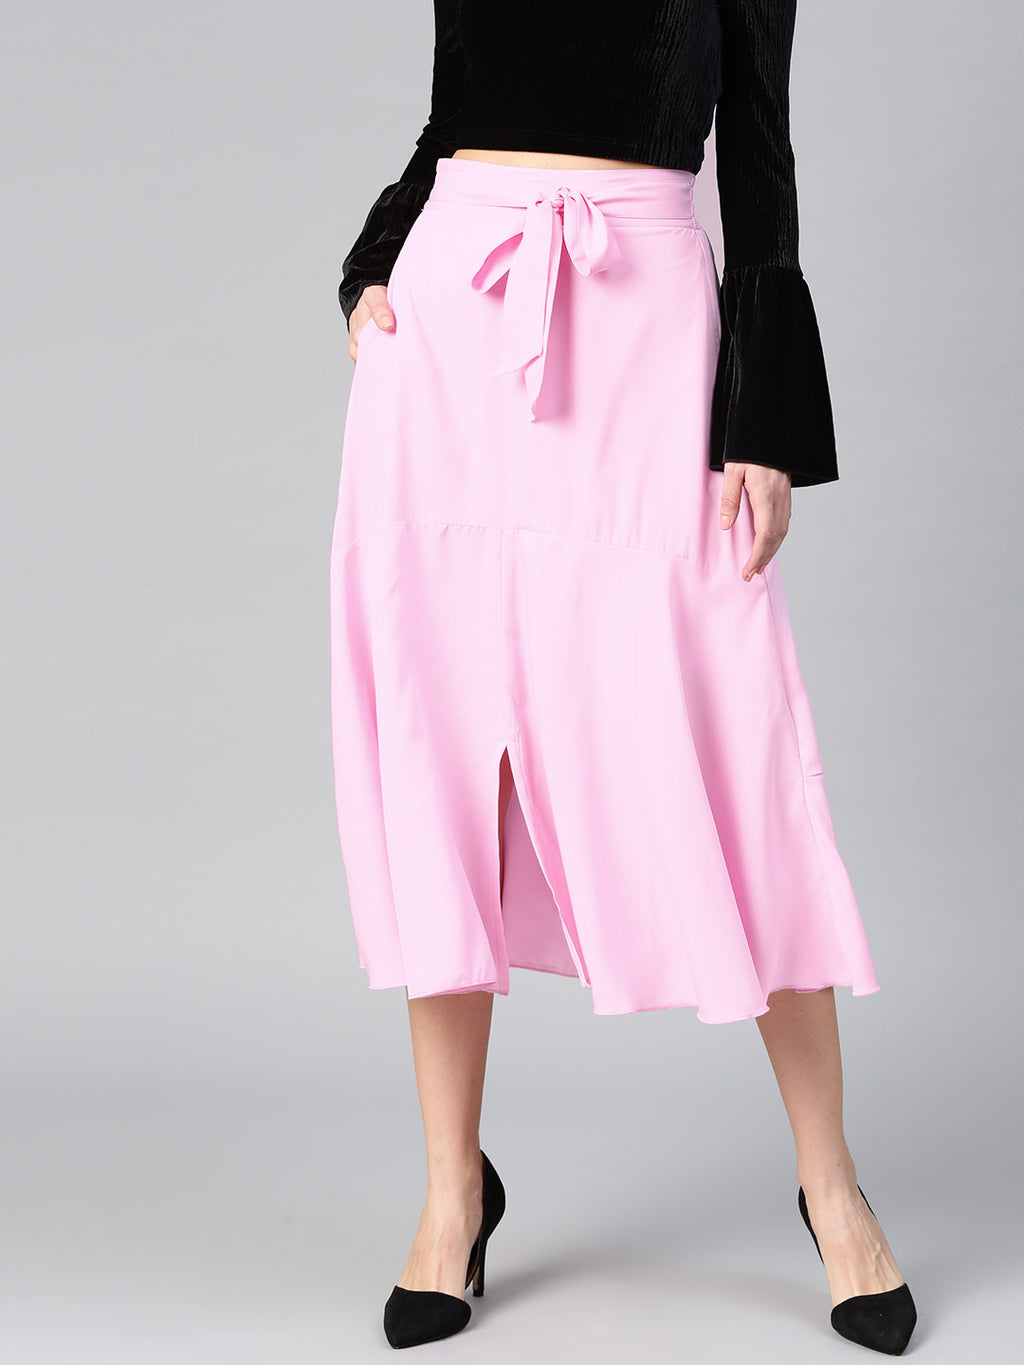 Pink A Line Front Slit Skirt (Sku- BLMG12811).